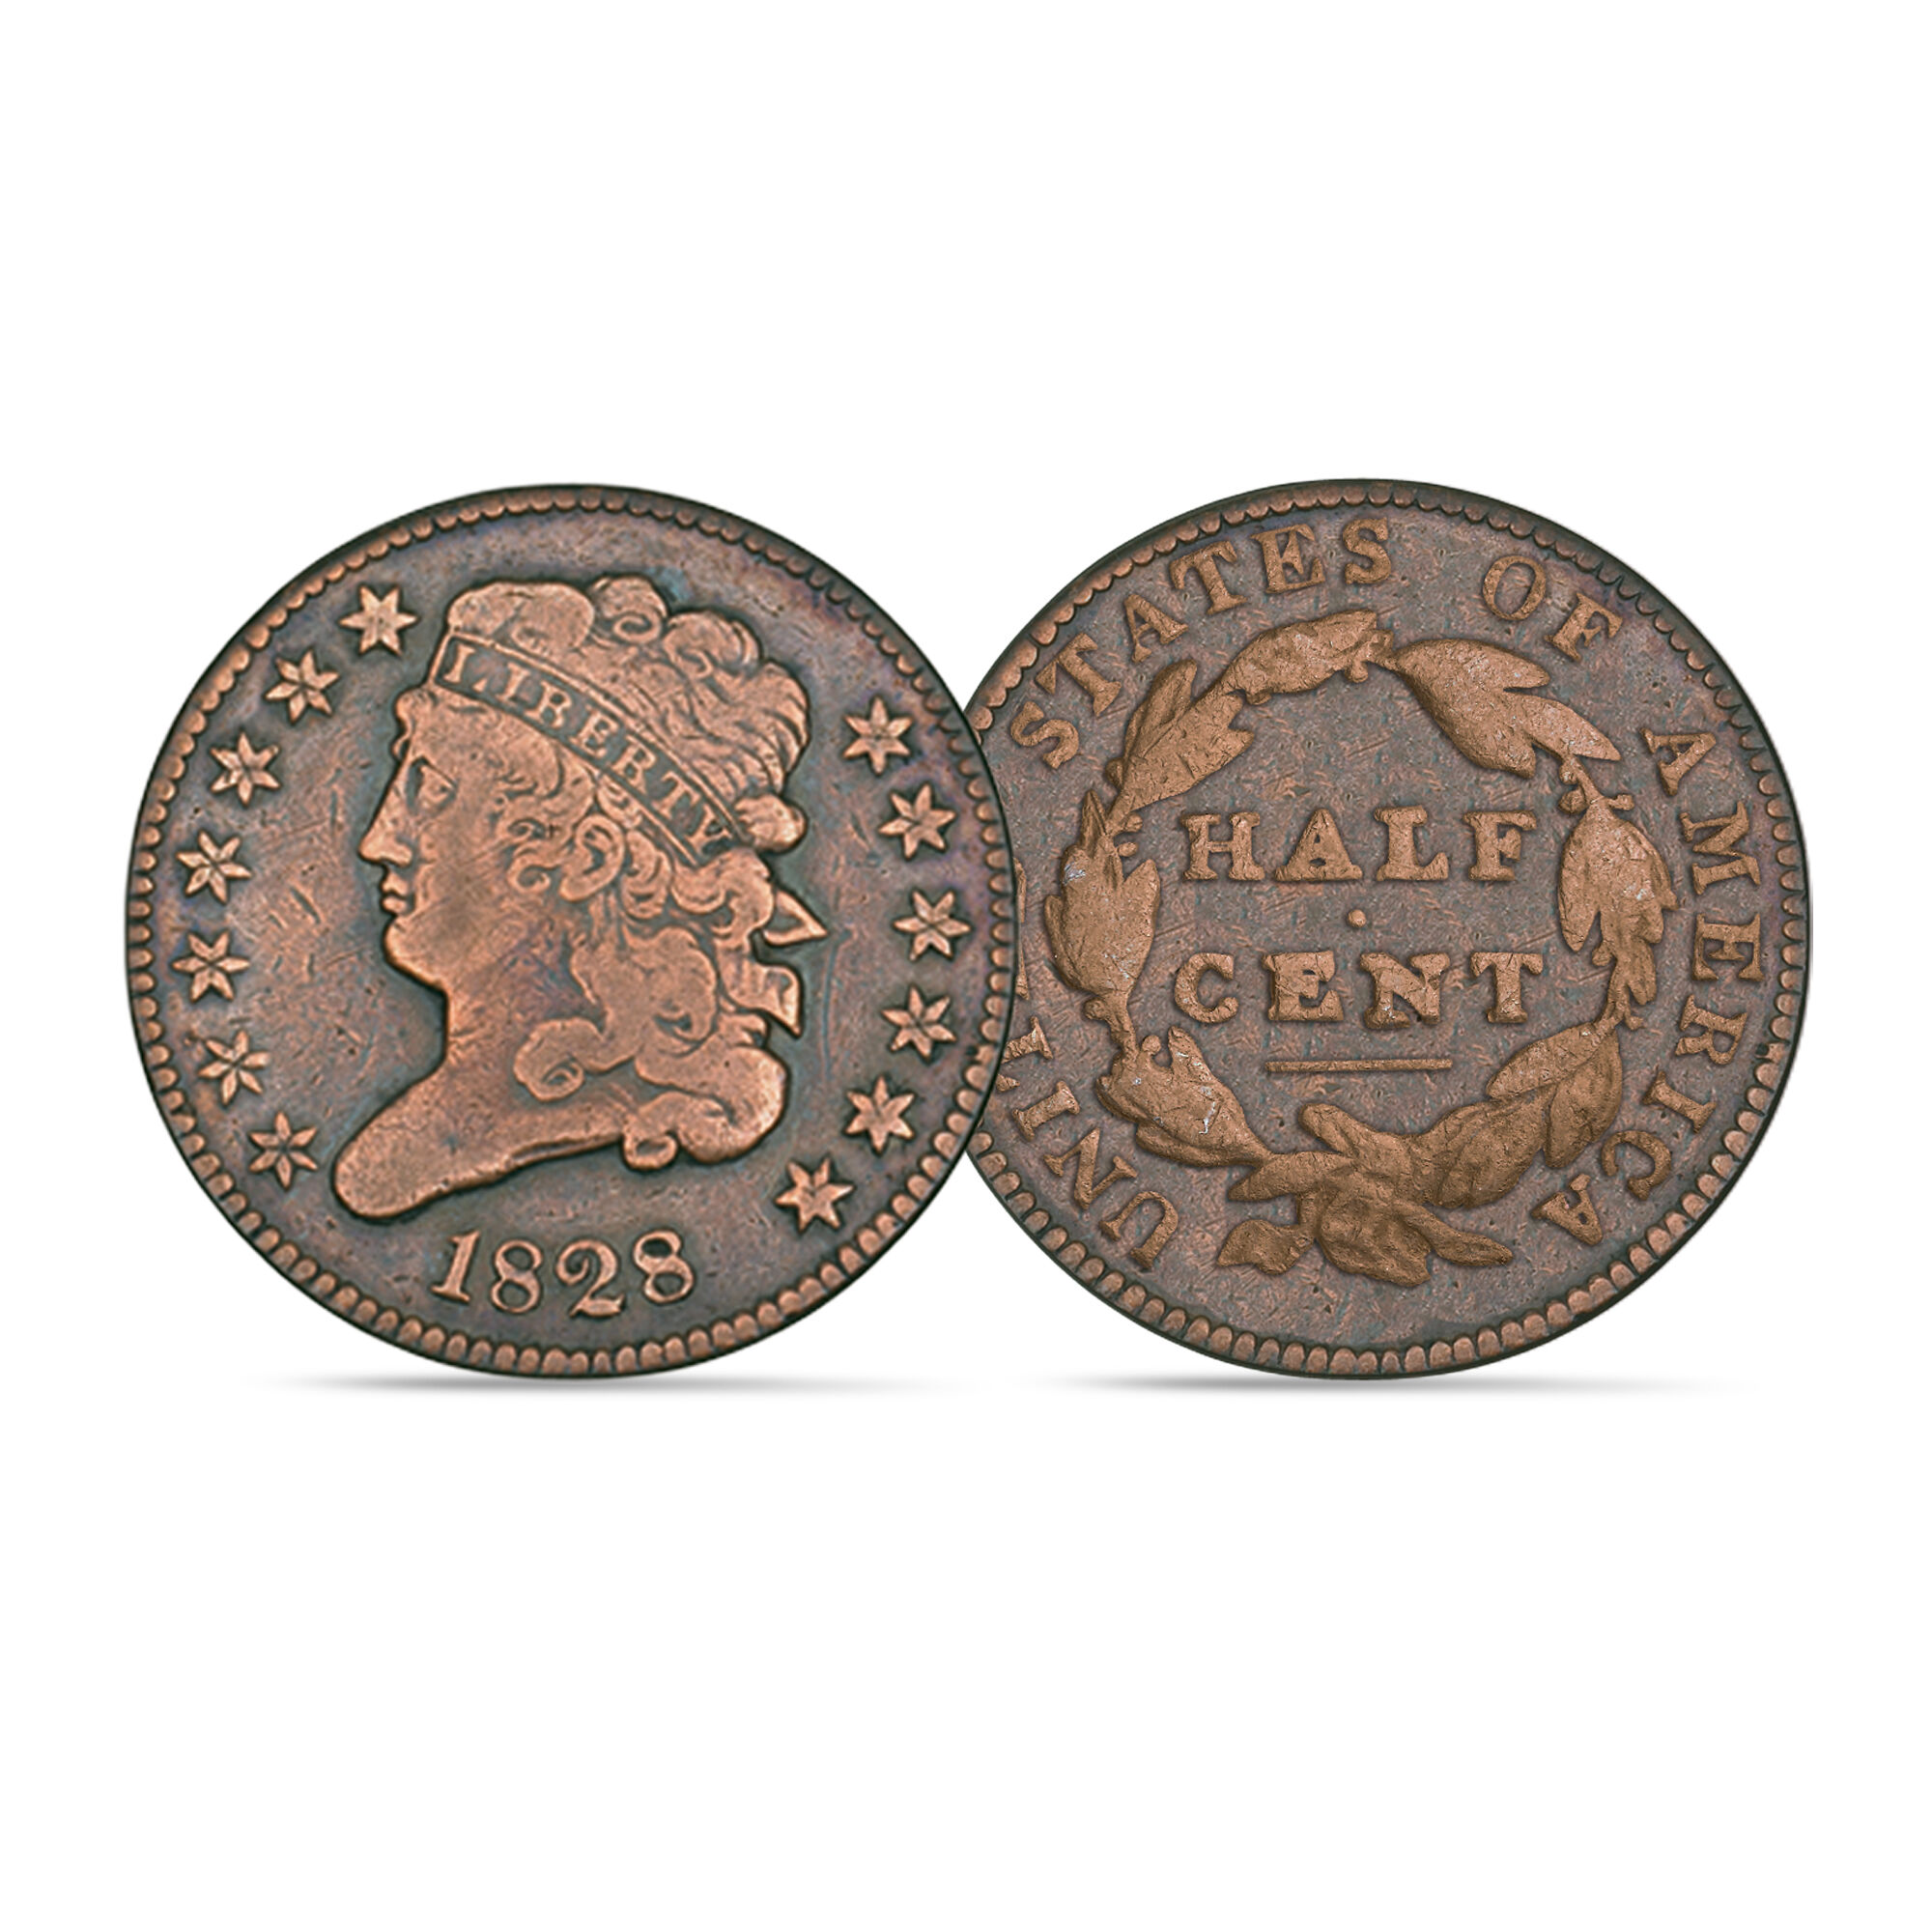 The Rare Cent Coin Collection 5218 0072 e coin